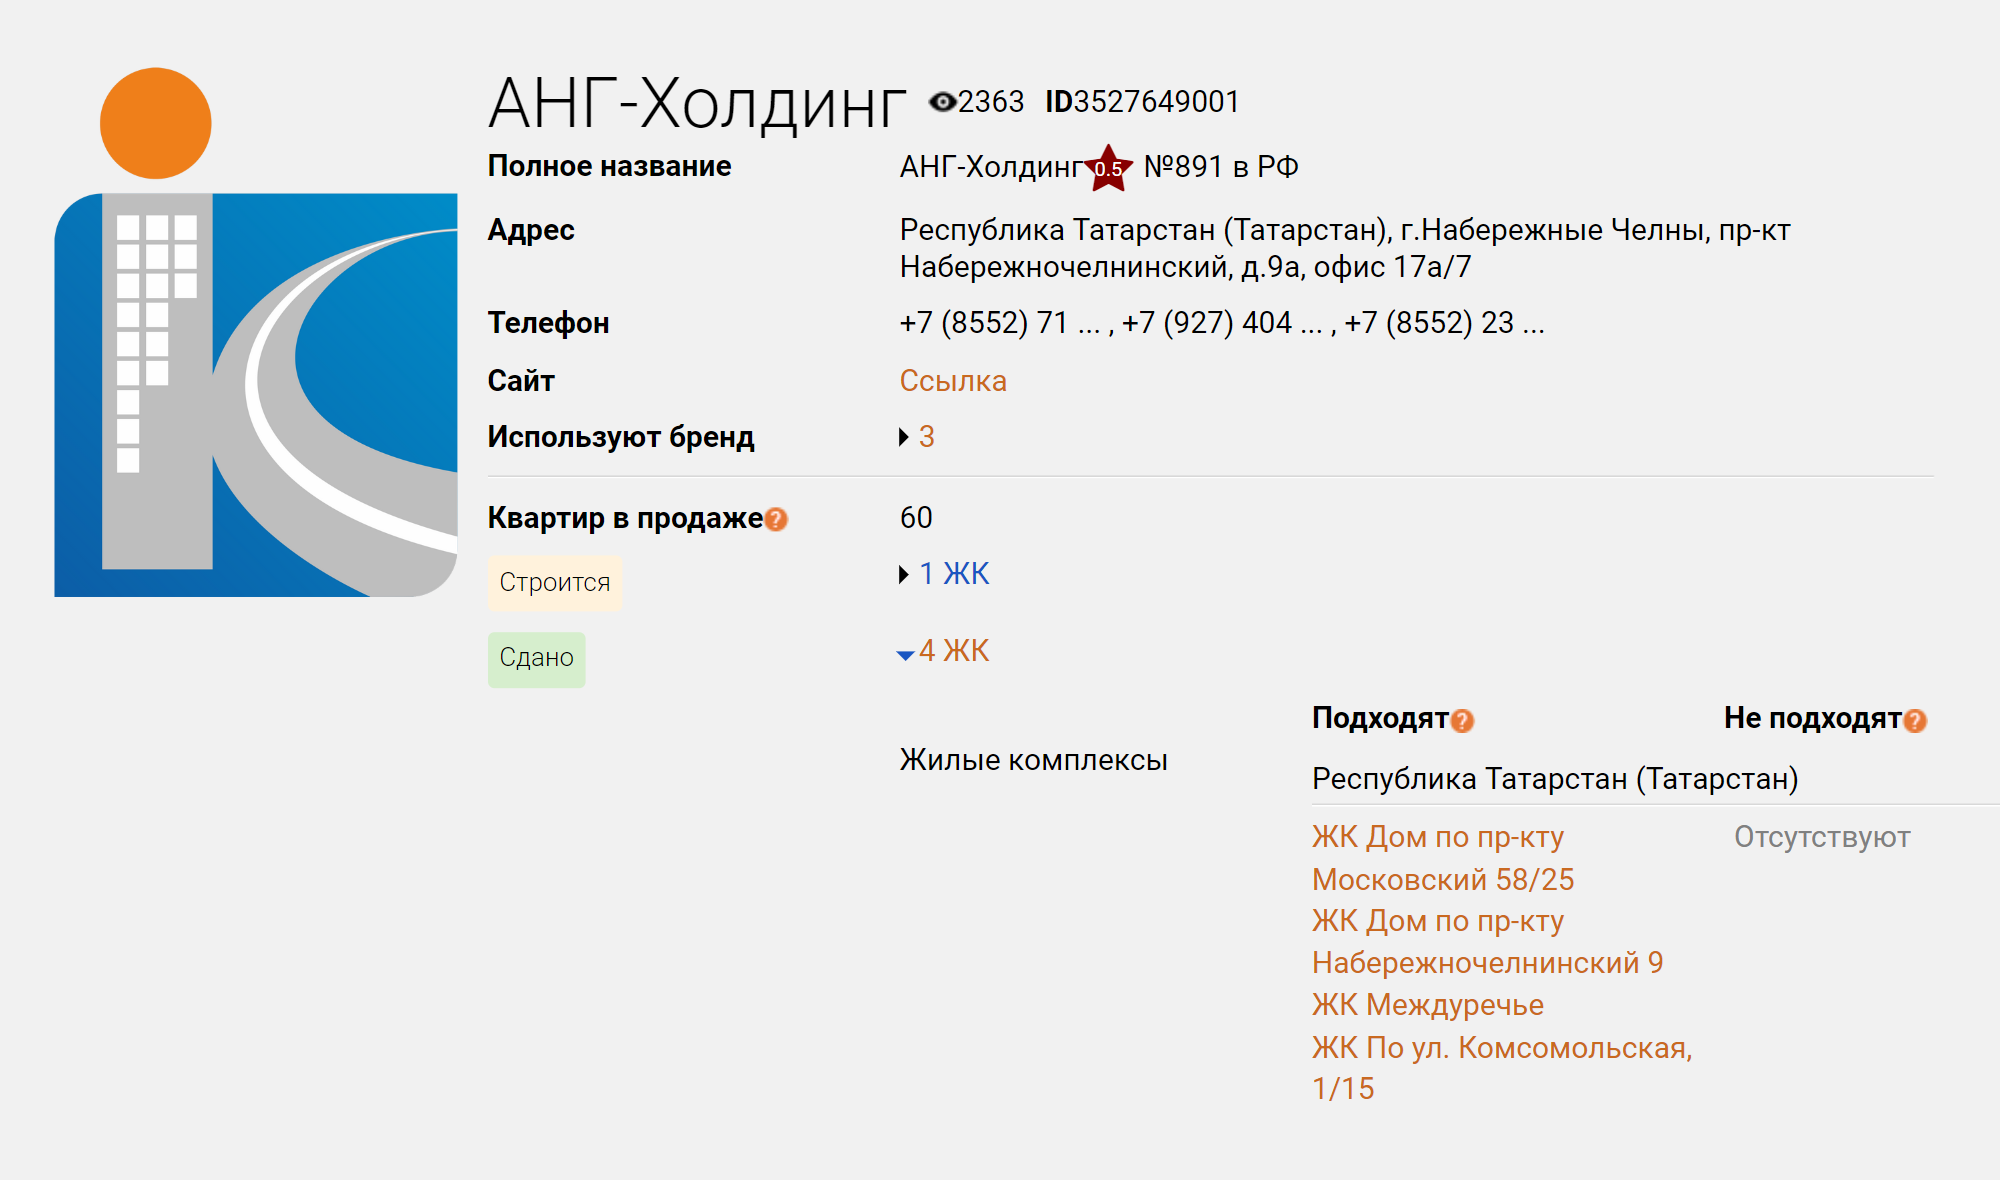 У этого застройщика из Татарстана указано, что он сдал четыре ЖК. Но каждый из этих домов строили разные компании, которые объединены под общим брендом «АНГ⁠-⁠Холдинг». Источник: erzrf.ru